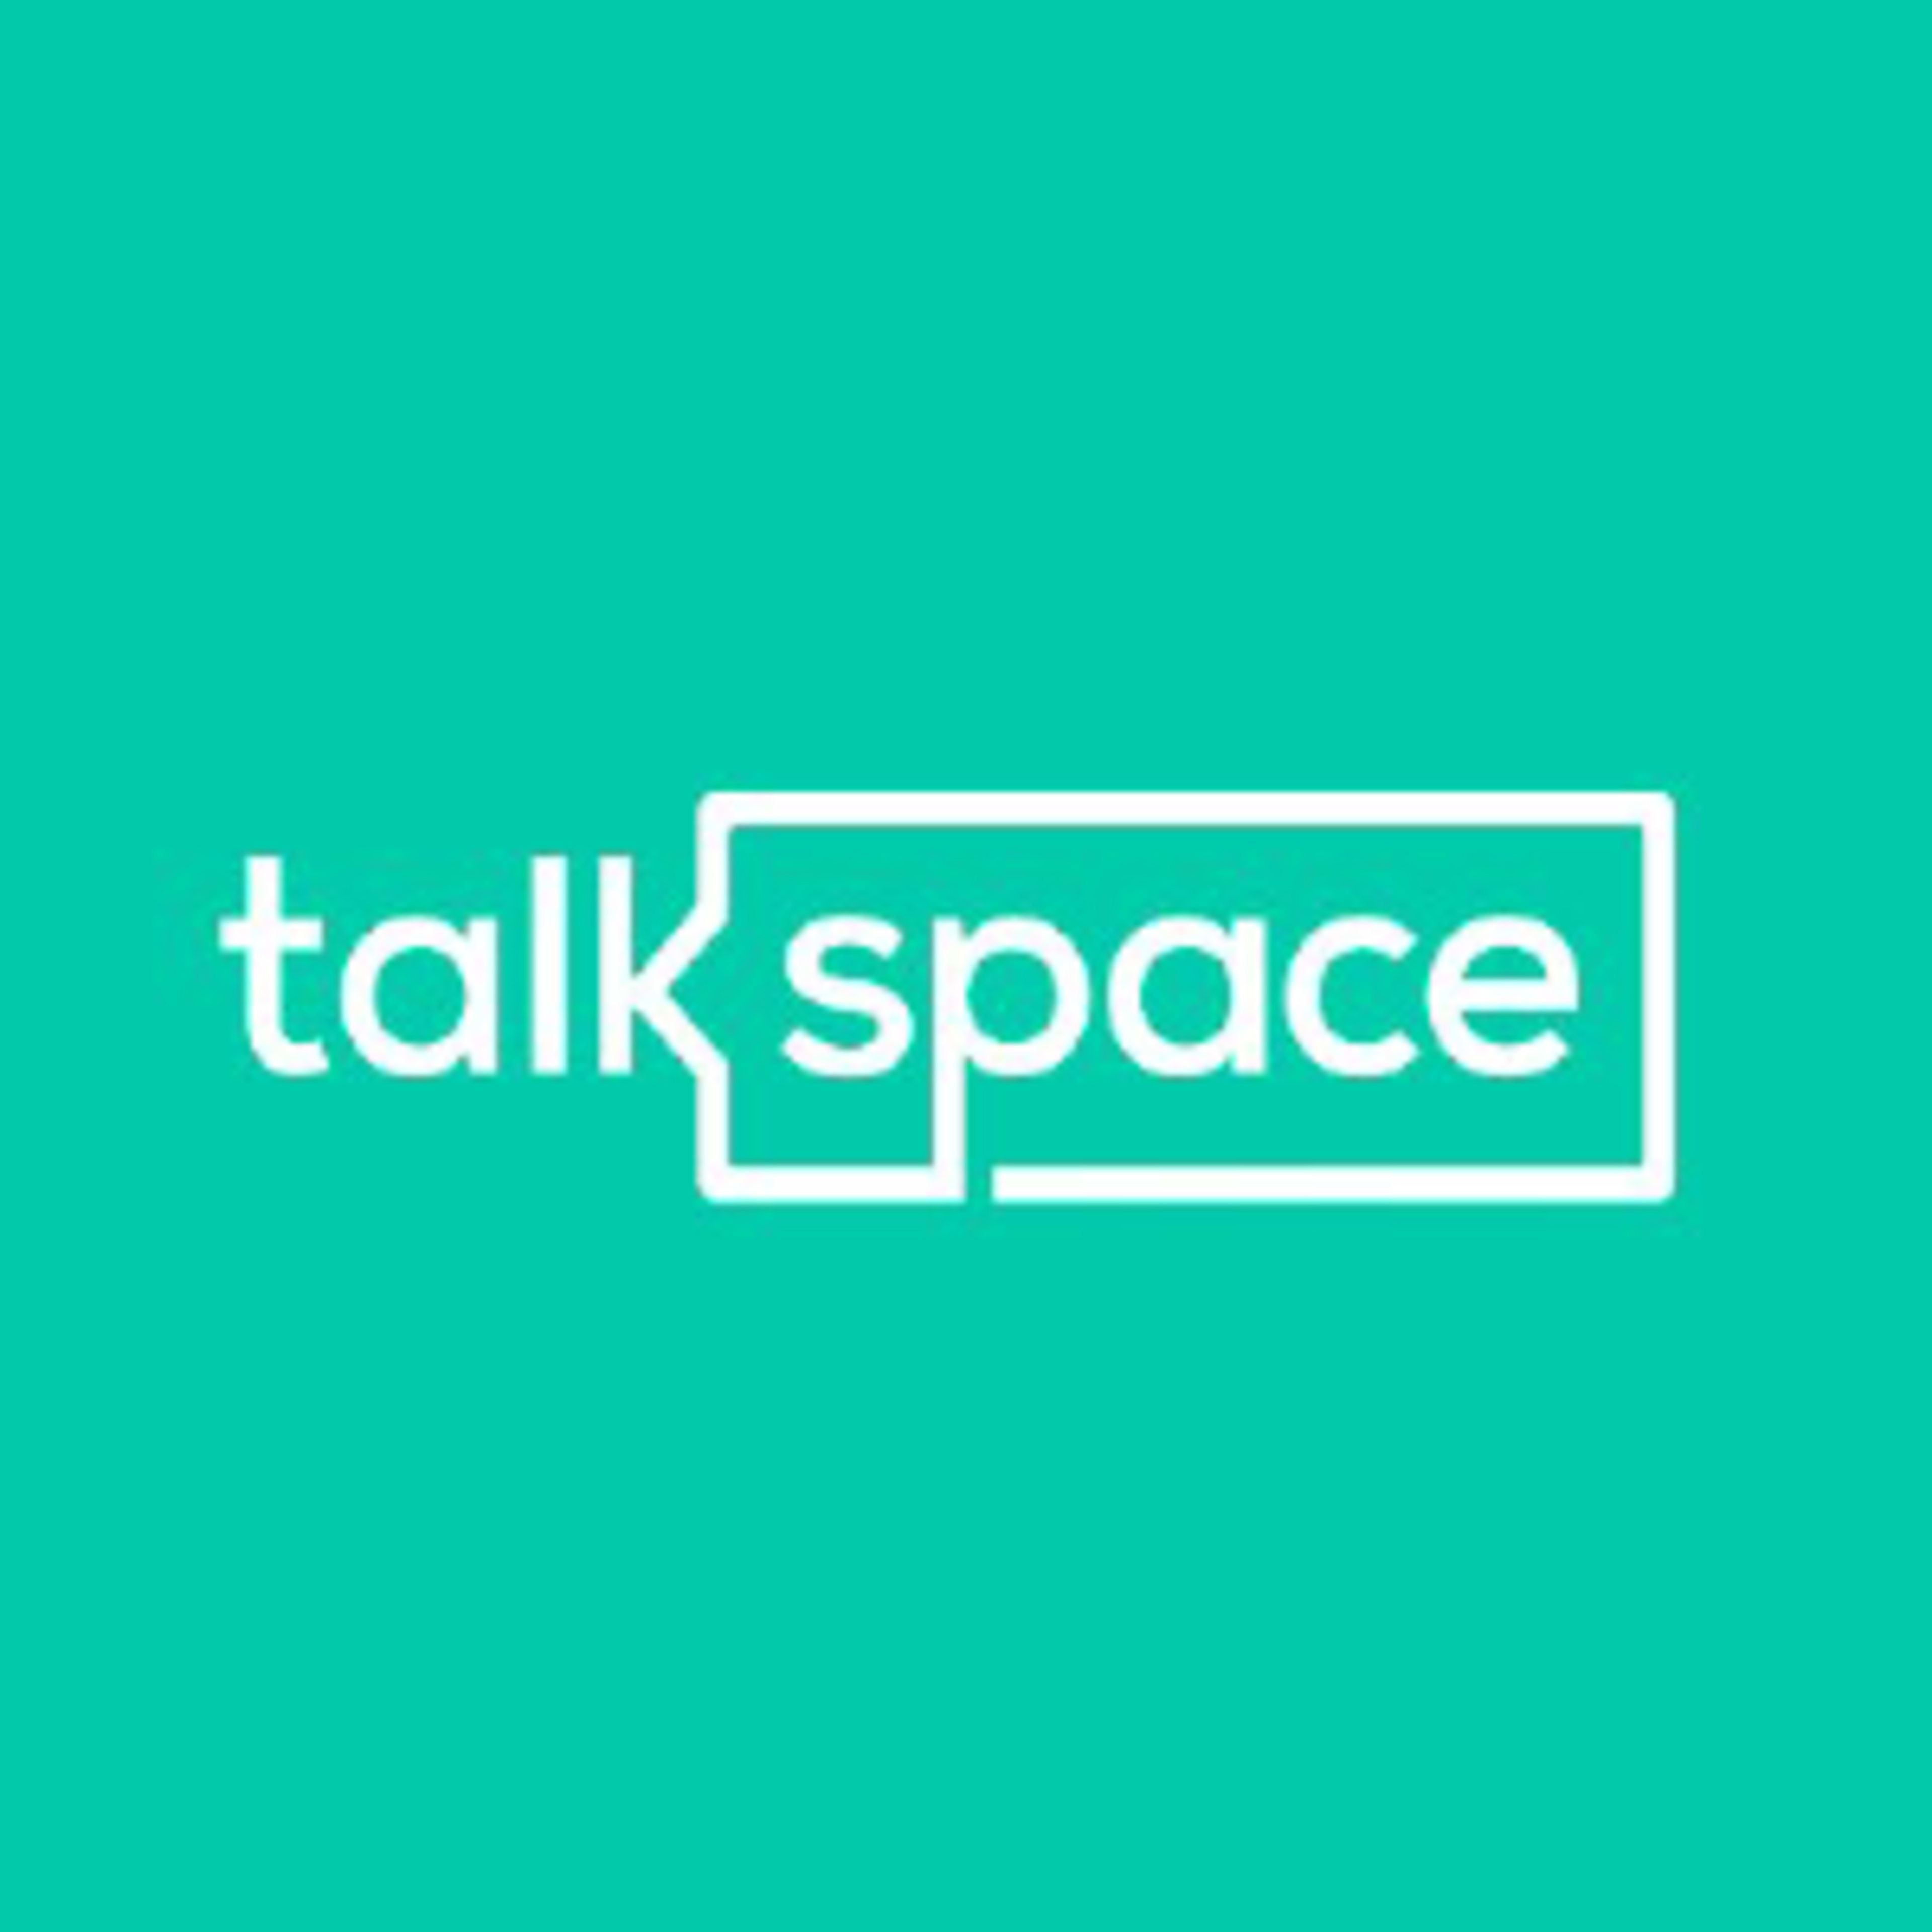 TalkspaceCode